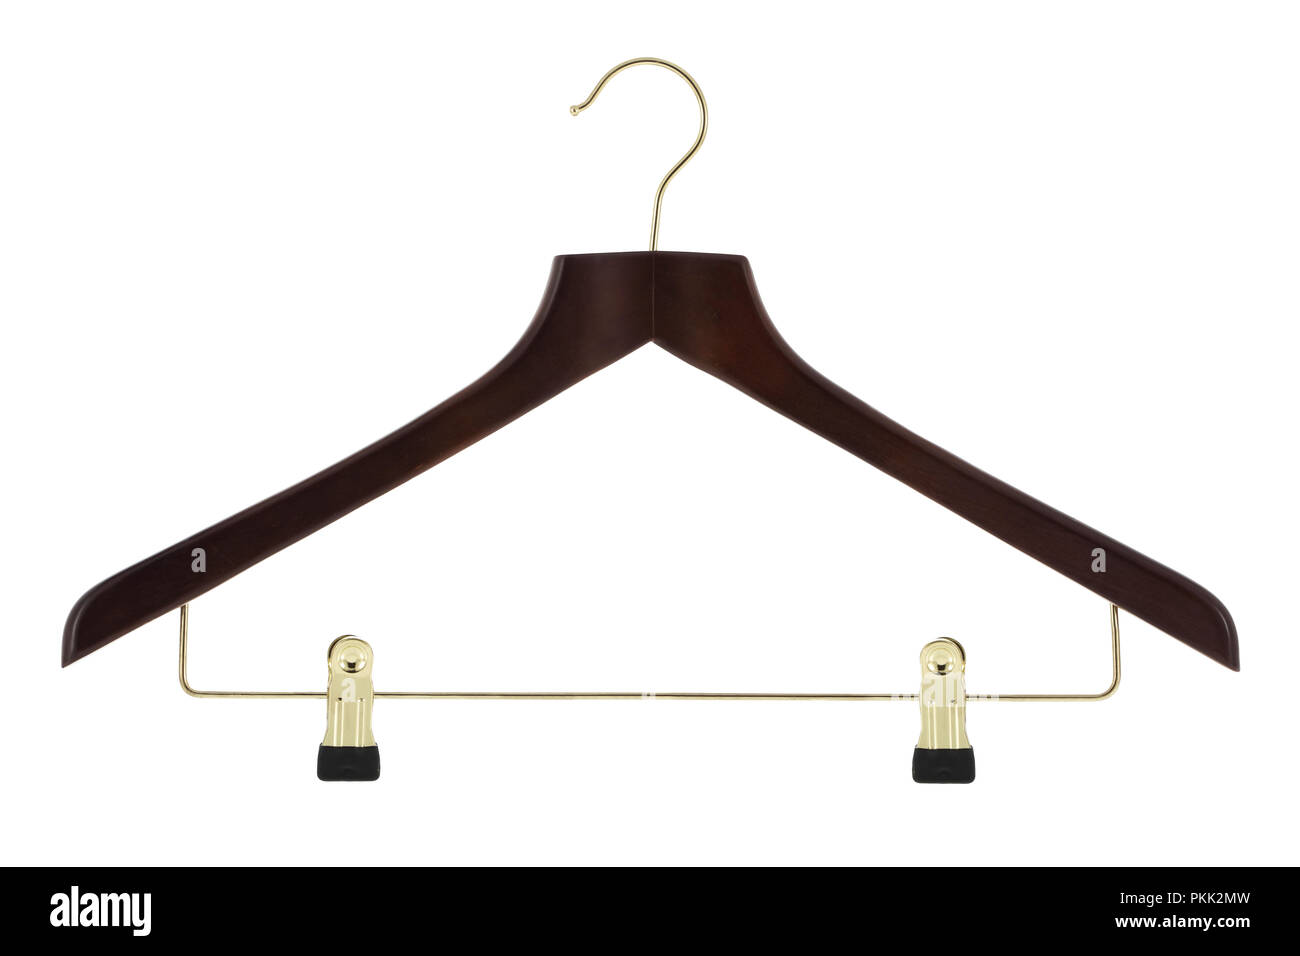 En bois avec un cintre en métal de couleur or jupe / pantalon hanger isolé sur fond blanc Banque D'Images